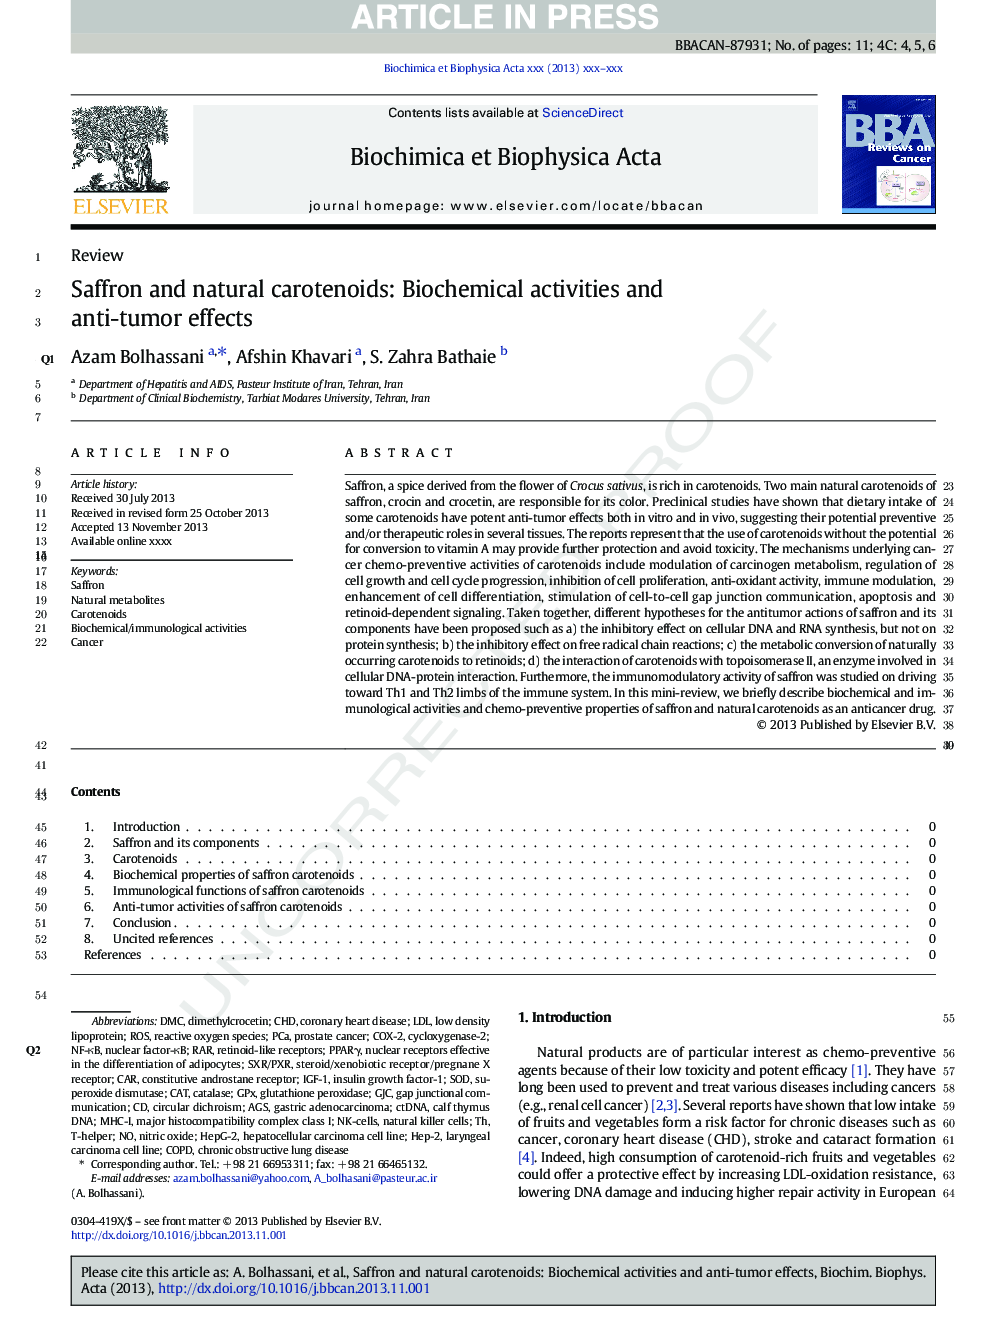 زعفران و کاروتنوئیدهای طبیعی: فعالیت های بیوشیمیایی و اثرات ضد تومور 